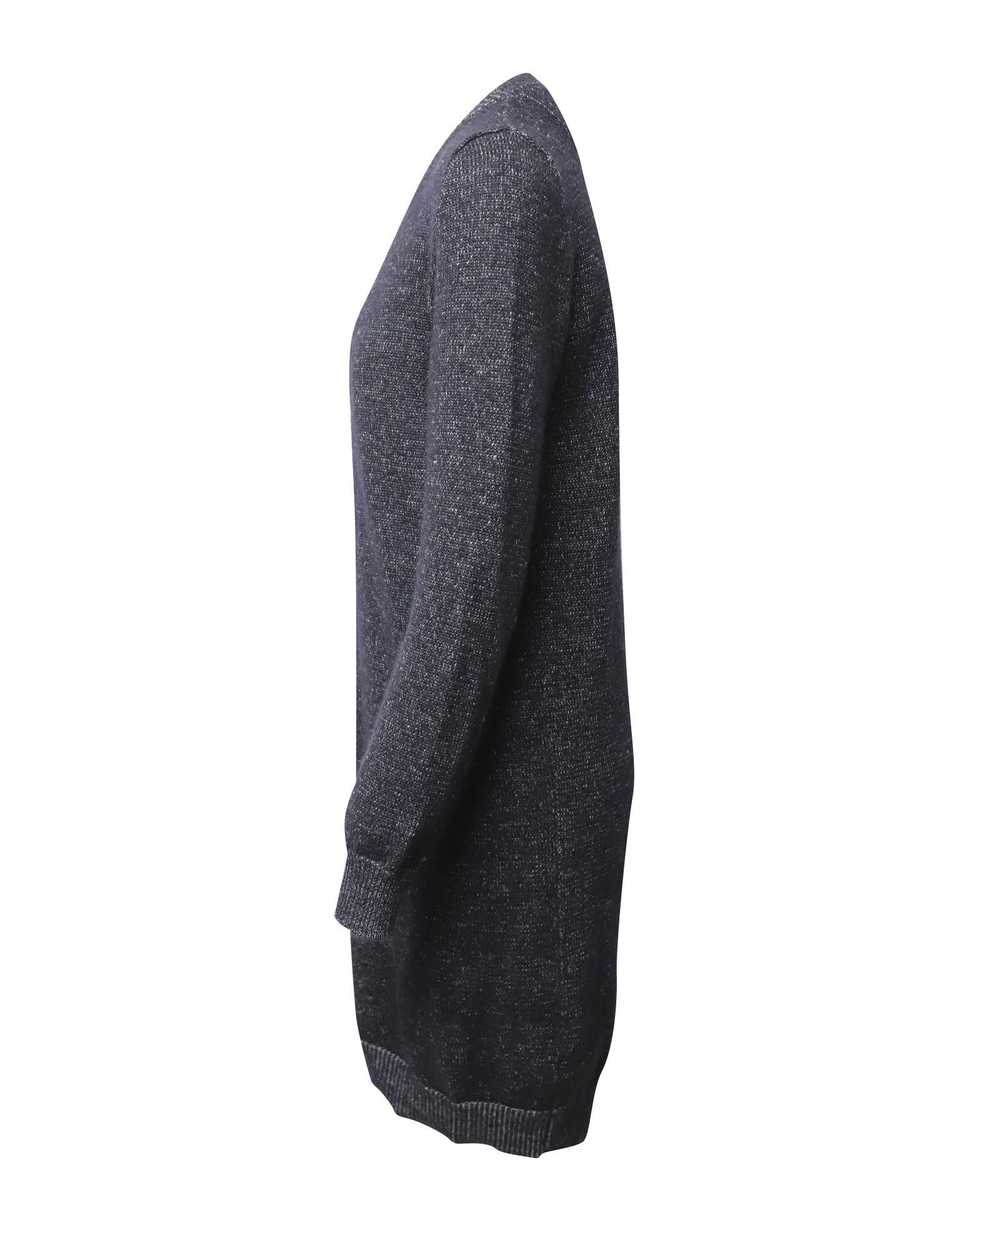 Maison Margiela Soft Knit Black Sweater Dress - image 2